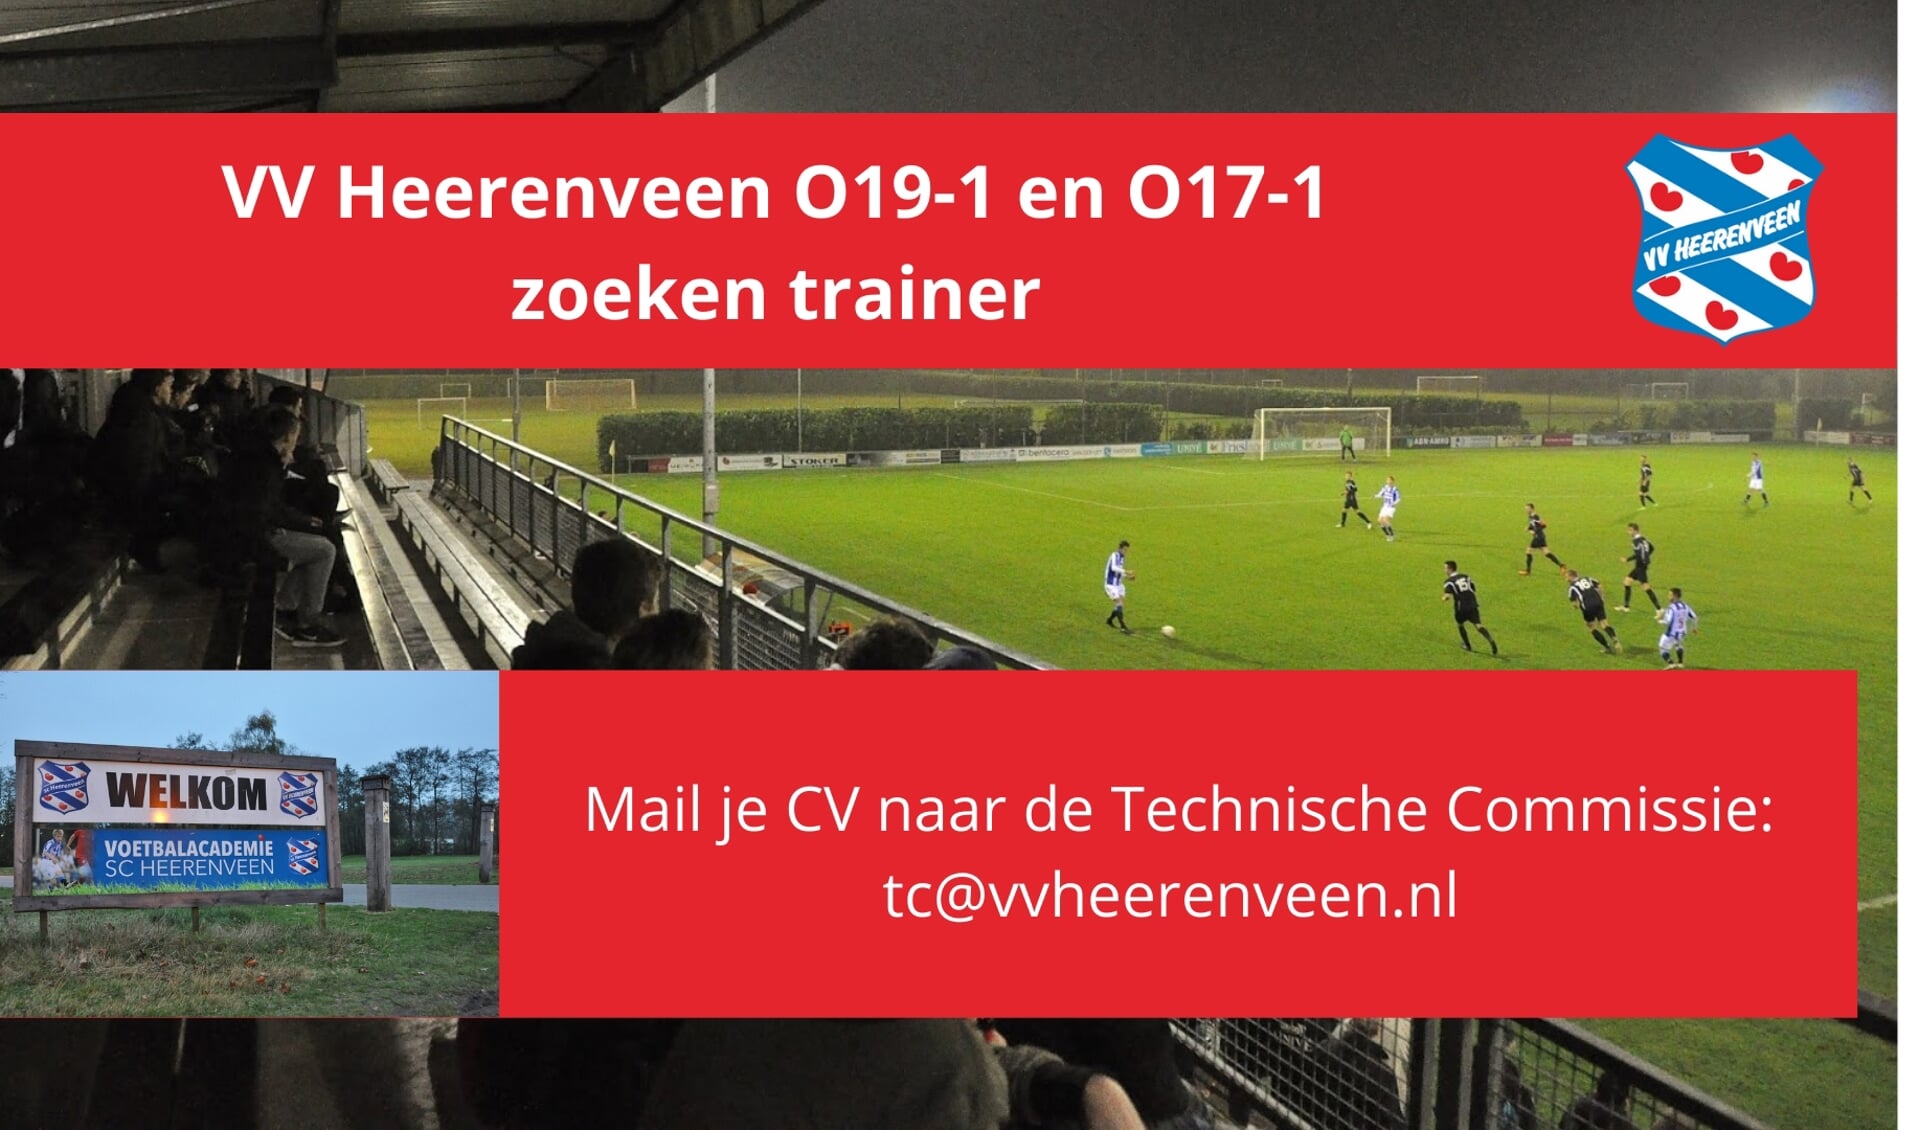 VV Heerenveen zoekt trainer voor O19-1 en O17-1